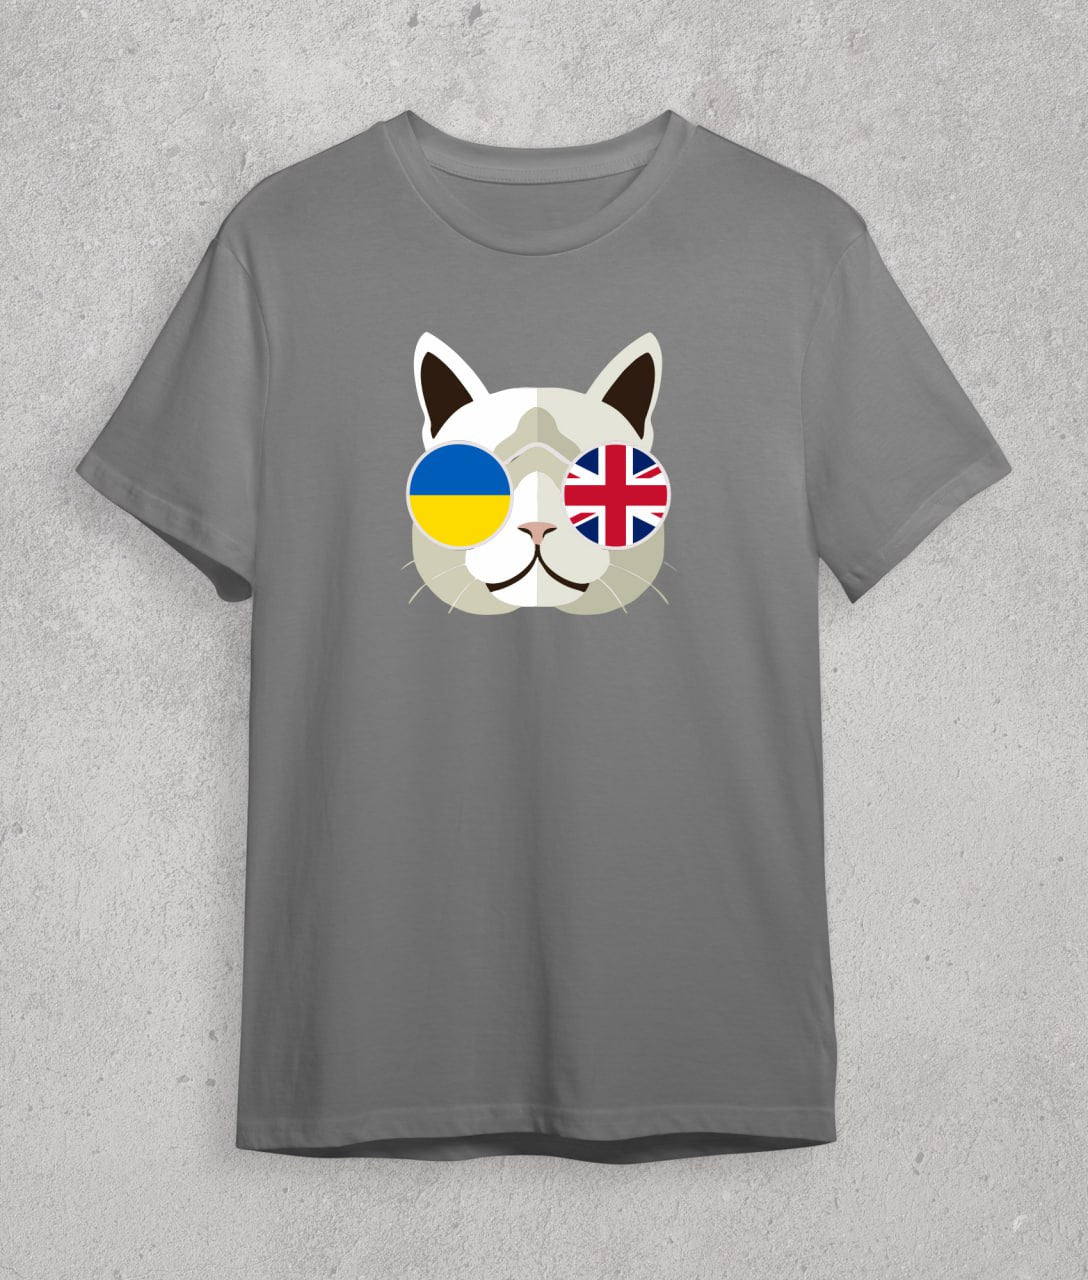 T-shirt UA + GB (cat)